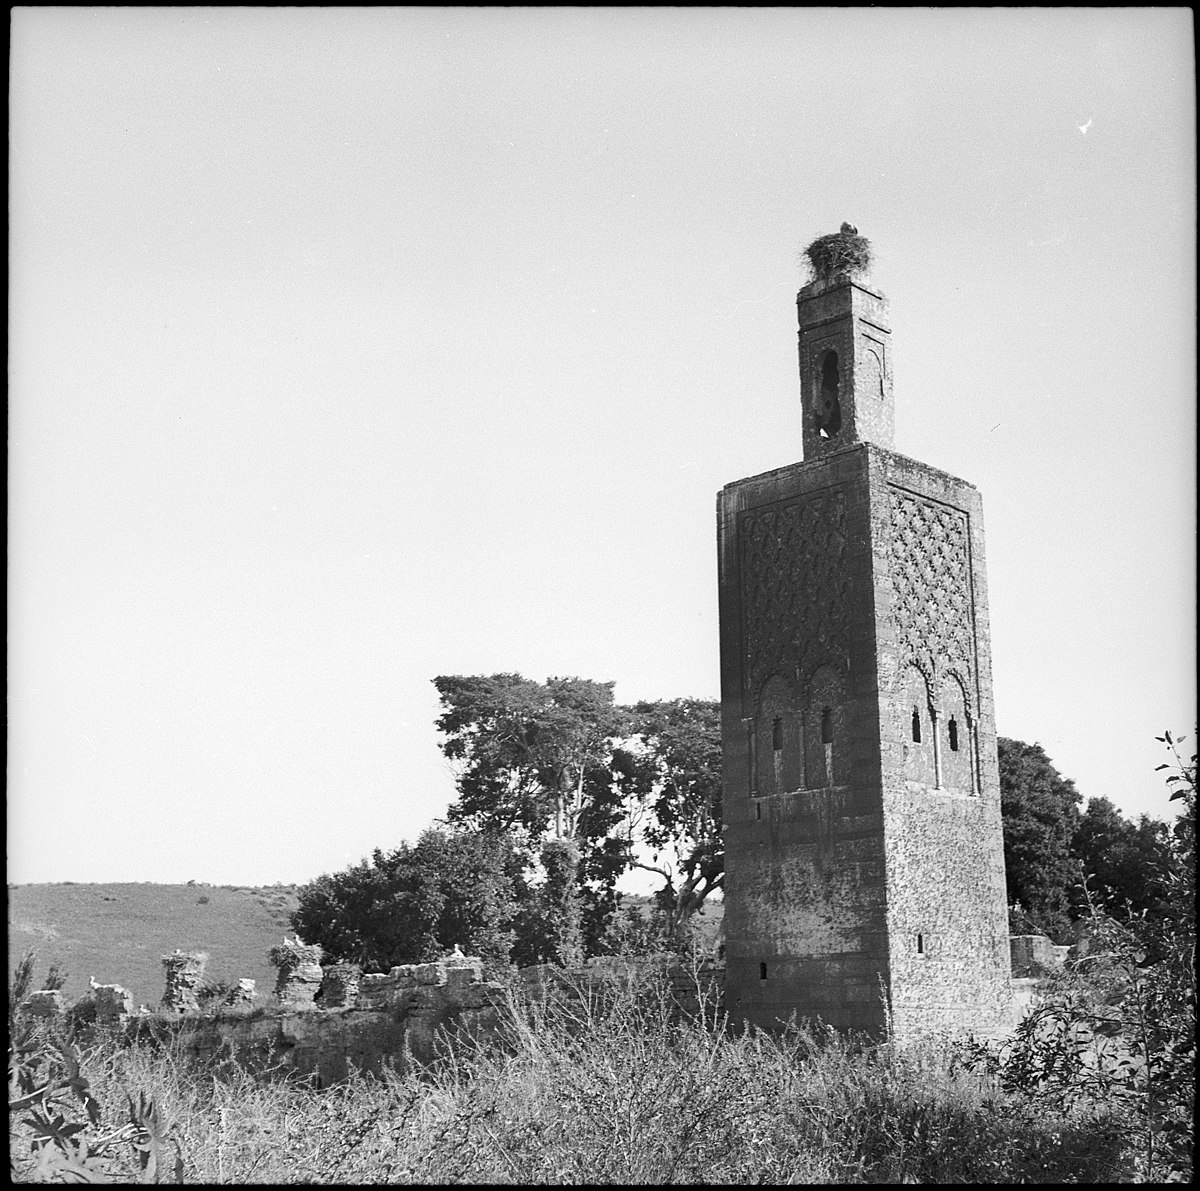 Französisch-Marokko, Rabat: Grabstätte Chellah; Aussenansicht des viereckigen Minaretts neben Ruinenresten